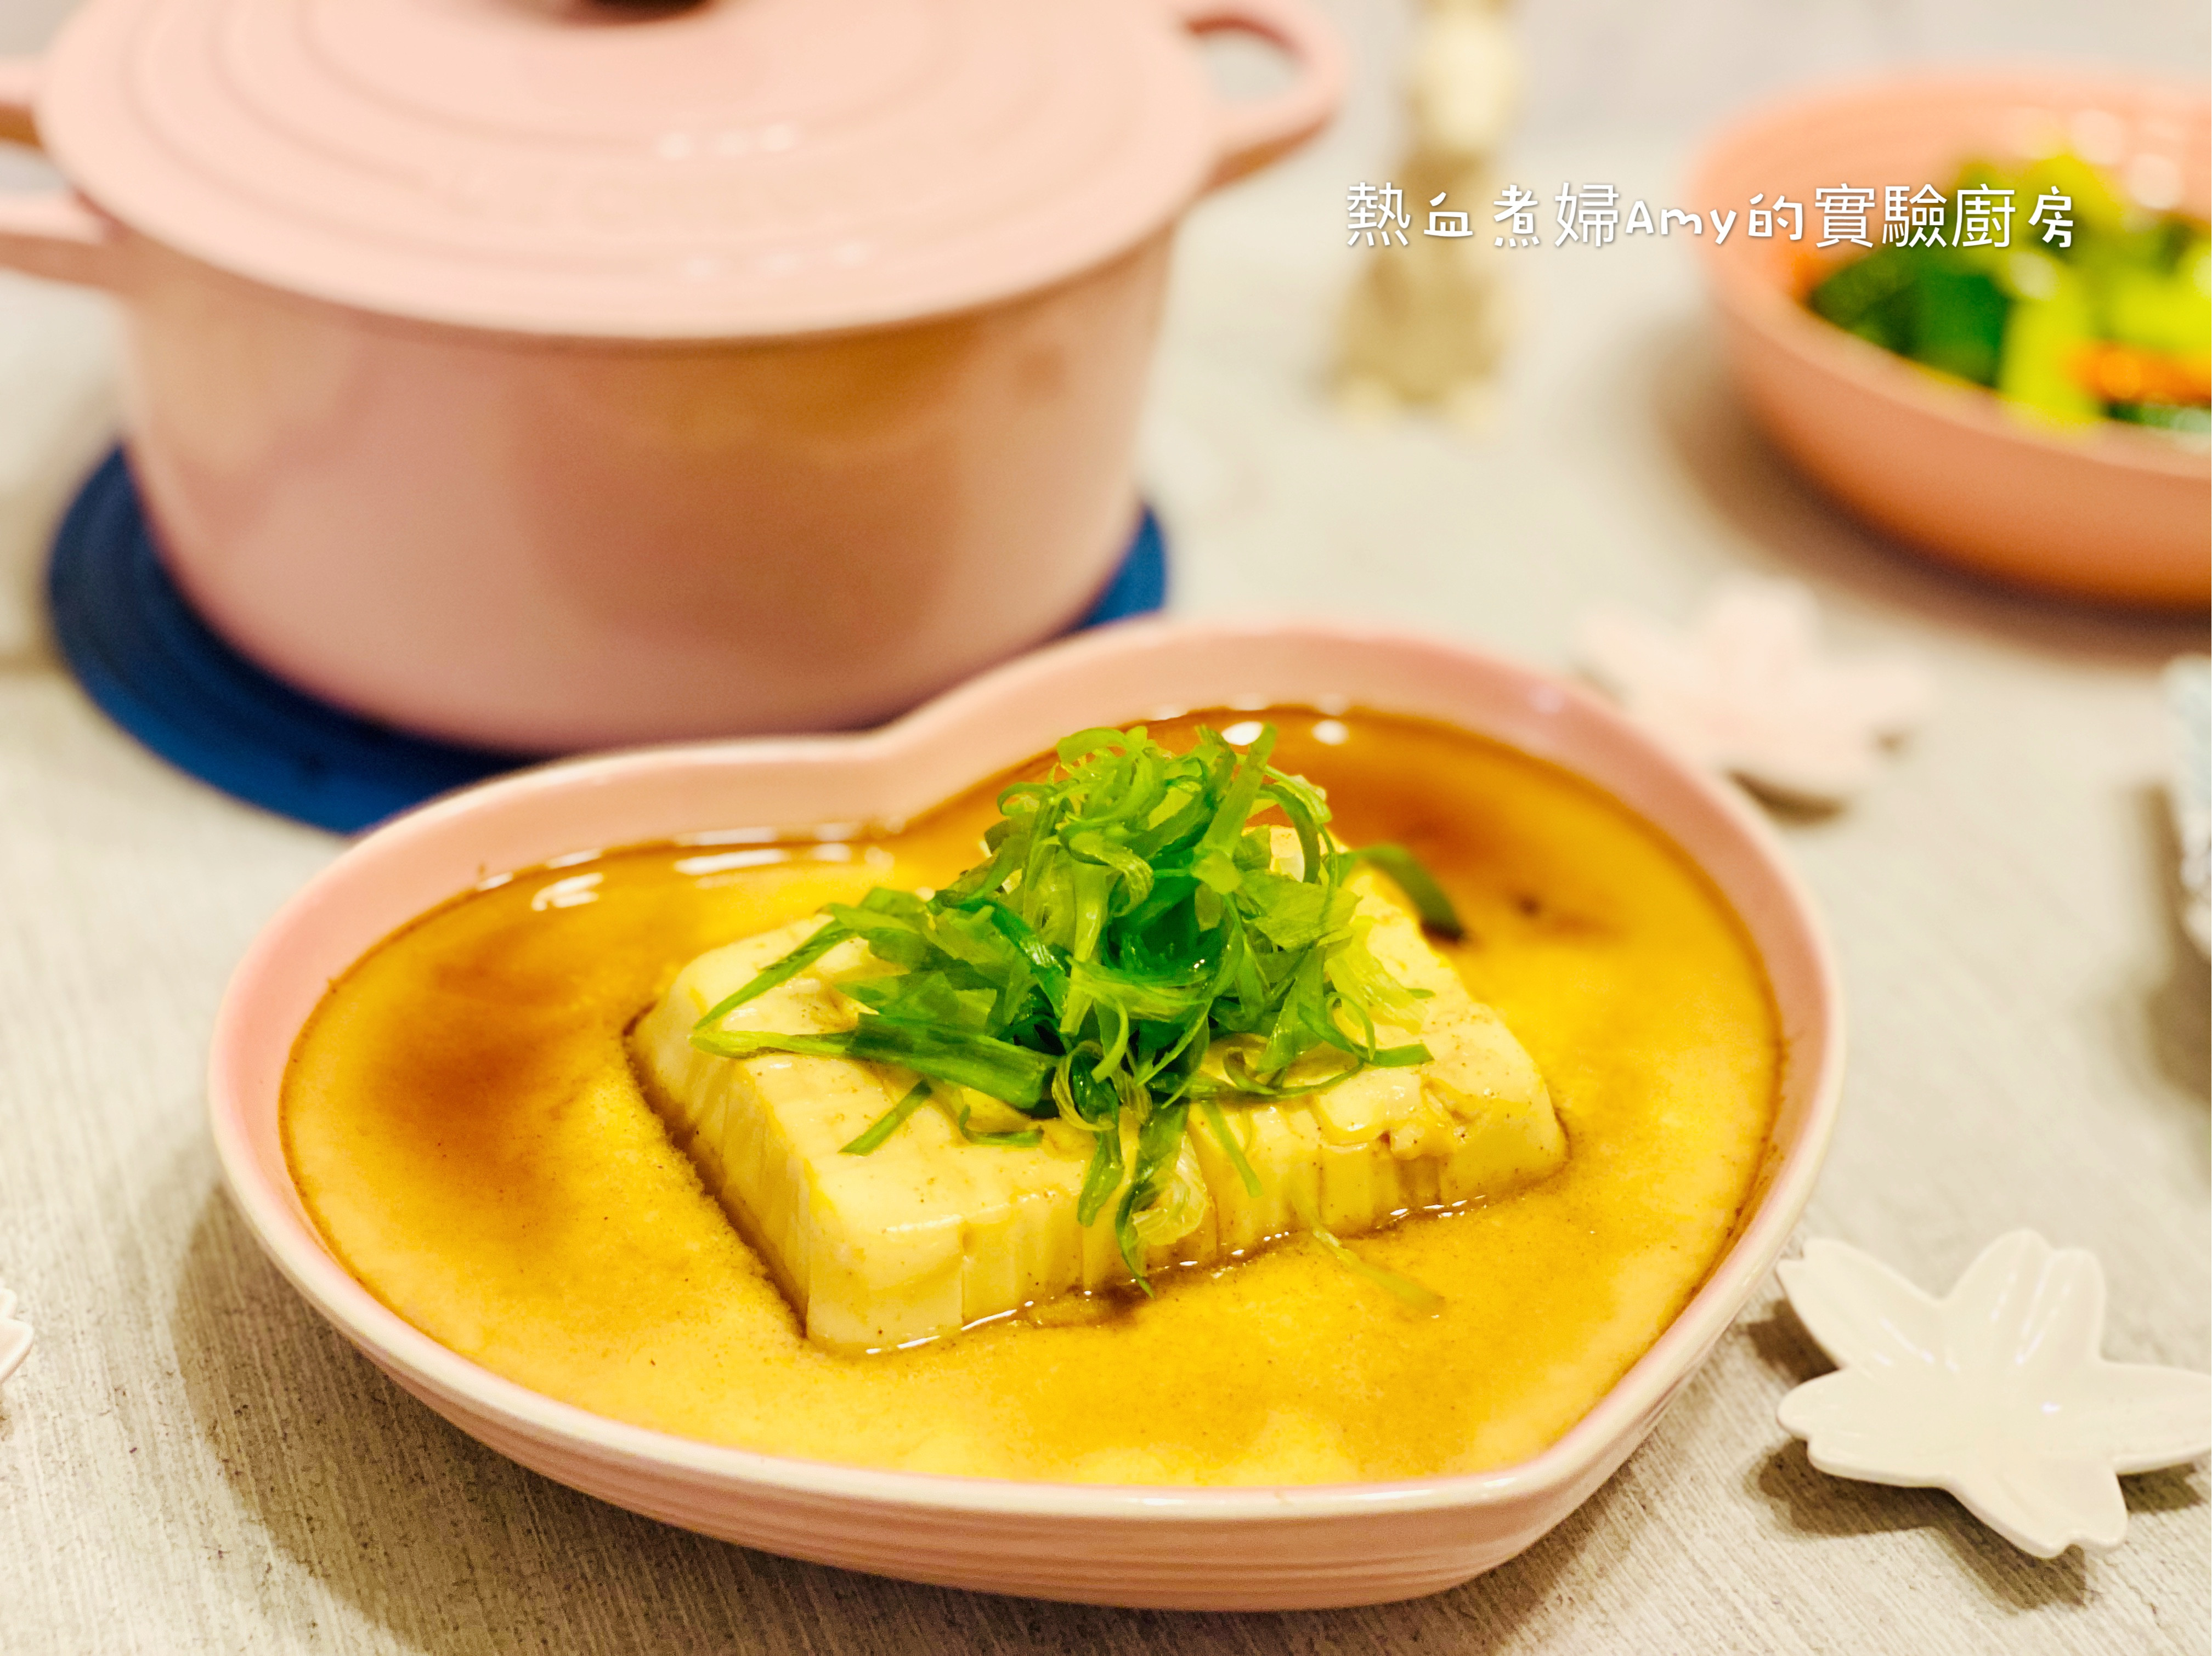 豆腐蒸蛋,豆腐蒸蛋的家常做法 - 美食杰豆腐蒸蛋做法大全